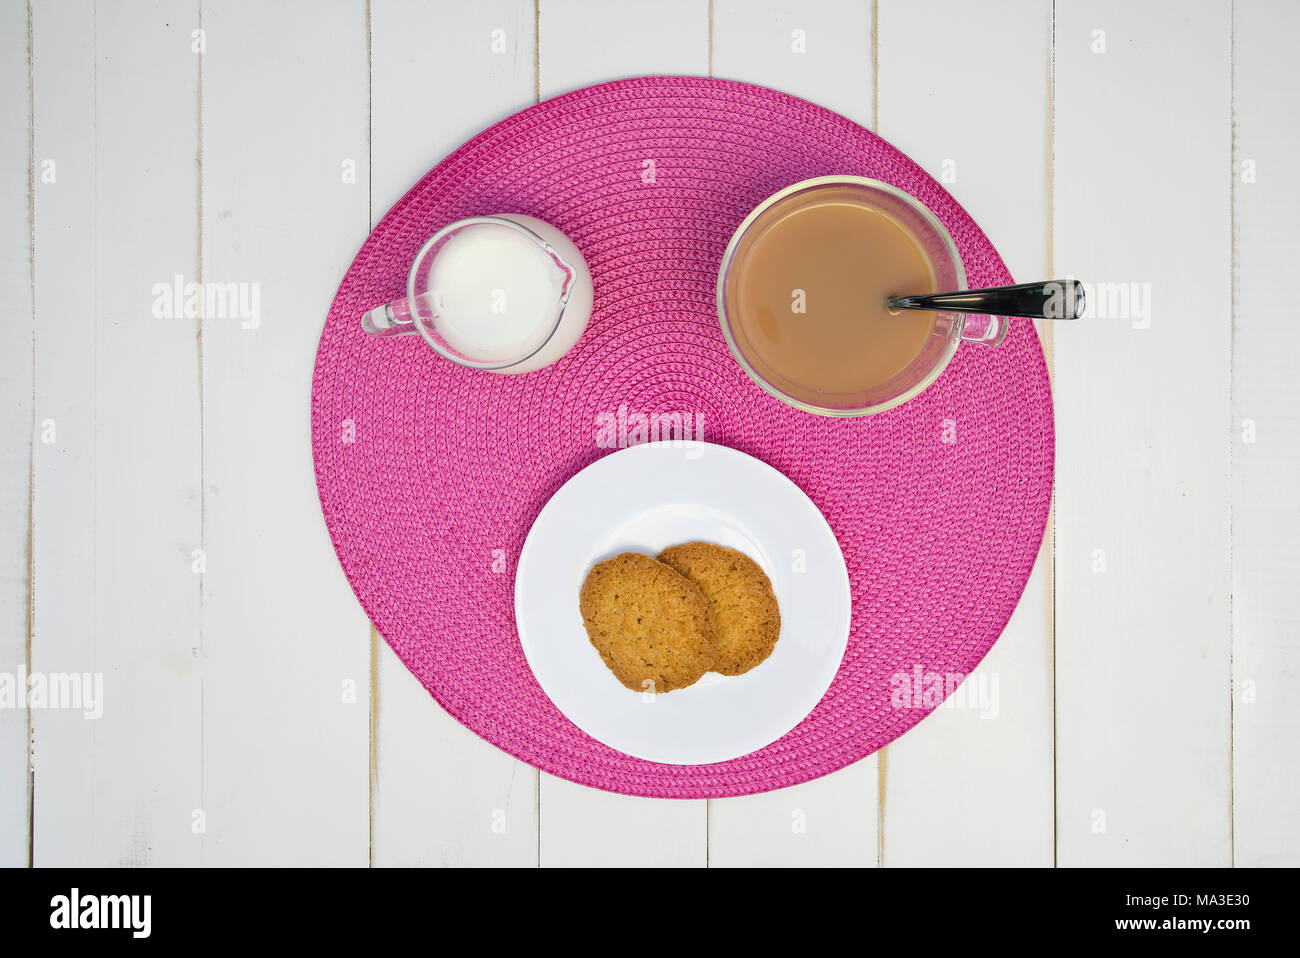 Heißen Tee, Kekse und Milch sind auf einem rosa Tischset auf eine weiße Tafel Tabelle angeordnet. Der Tee hat Milch in it. Die Anordnung wird zentriert und von o Shot Stockfoto